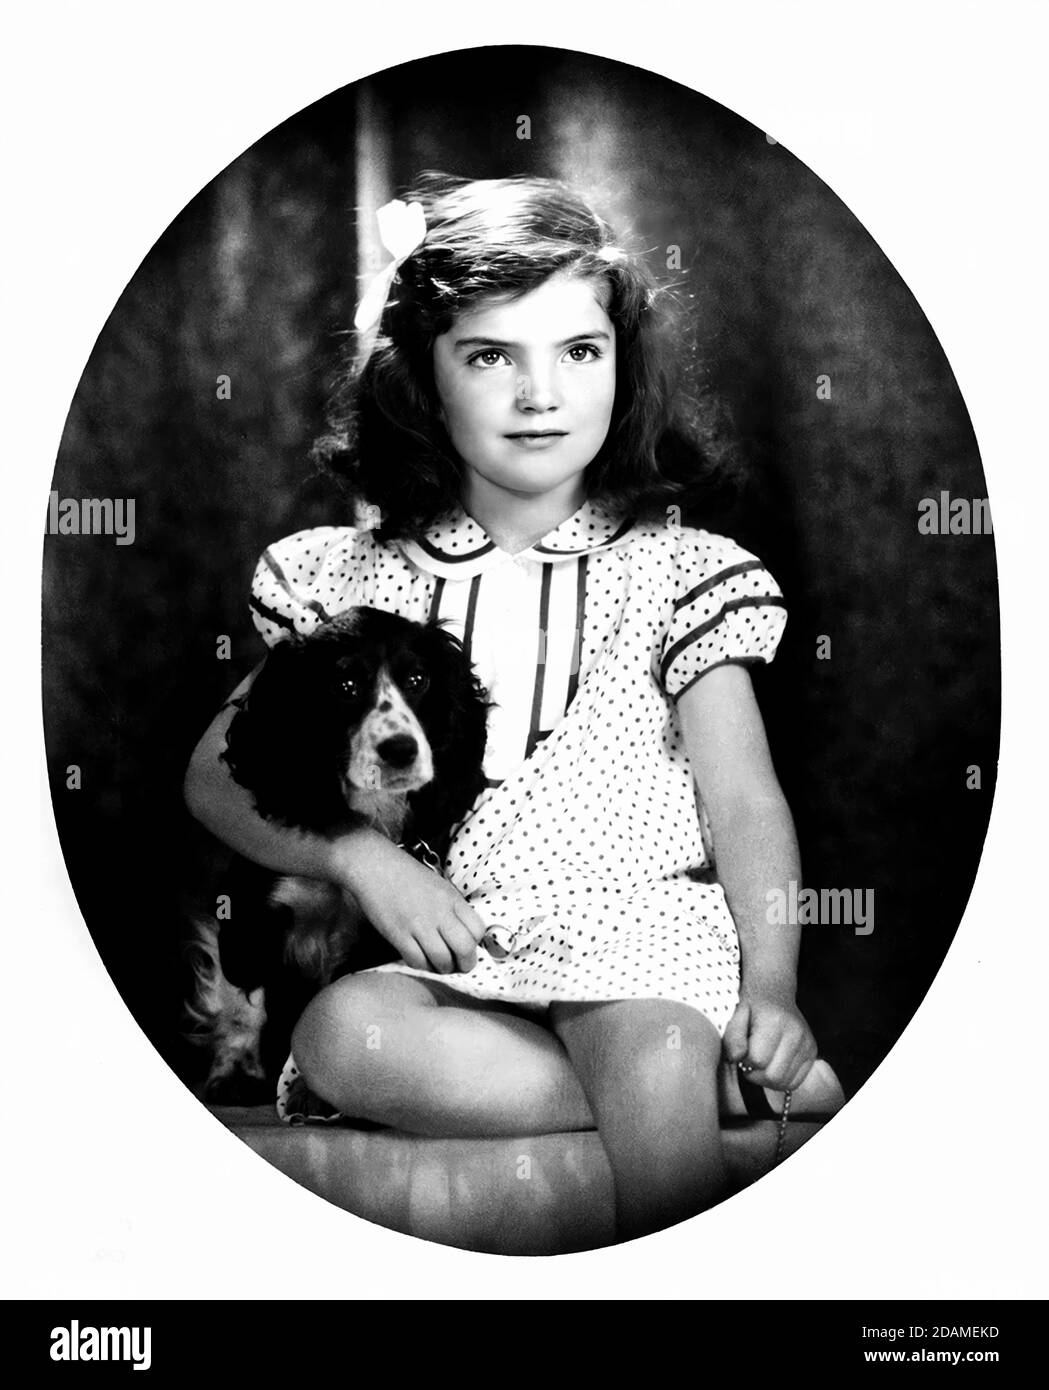 1935 , USA : JACQUELINE Lee BOUVIER ( JACKIE o , 1929 - 1994 ), quando era una bambina ricca di 6 anni . In seguito sposò il presidente degli Stati Uniti John Fitzgerald KENNEDY ( 1917 - 1963 ) nel 1961 e nel 1968 con il ricco Aristotele ONASSIS ( 1906 - 1975 ) . Foto di David Berna . - JFK - J.F.K. - PRIMA SIGNORA - Presidente degli Stati Uniti d'America - BAMBINO - BAMBINI - INFANZIA - INFANZIA - bambino - bambina - bambini - personalità quando era giovane - personalità da giovani giovane - cane - cocker - cane - cane - animale domestico - animale domestico --- ARCHIVIO GBB Foto Stock